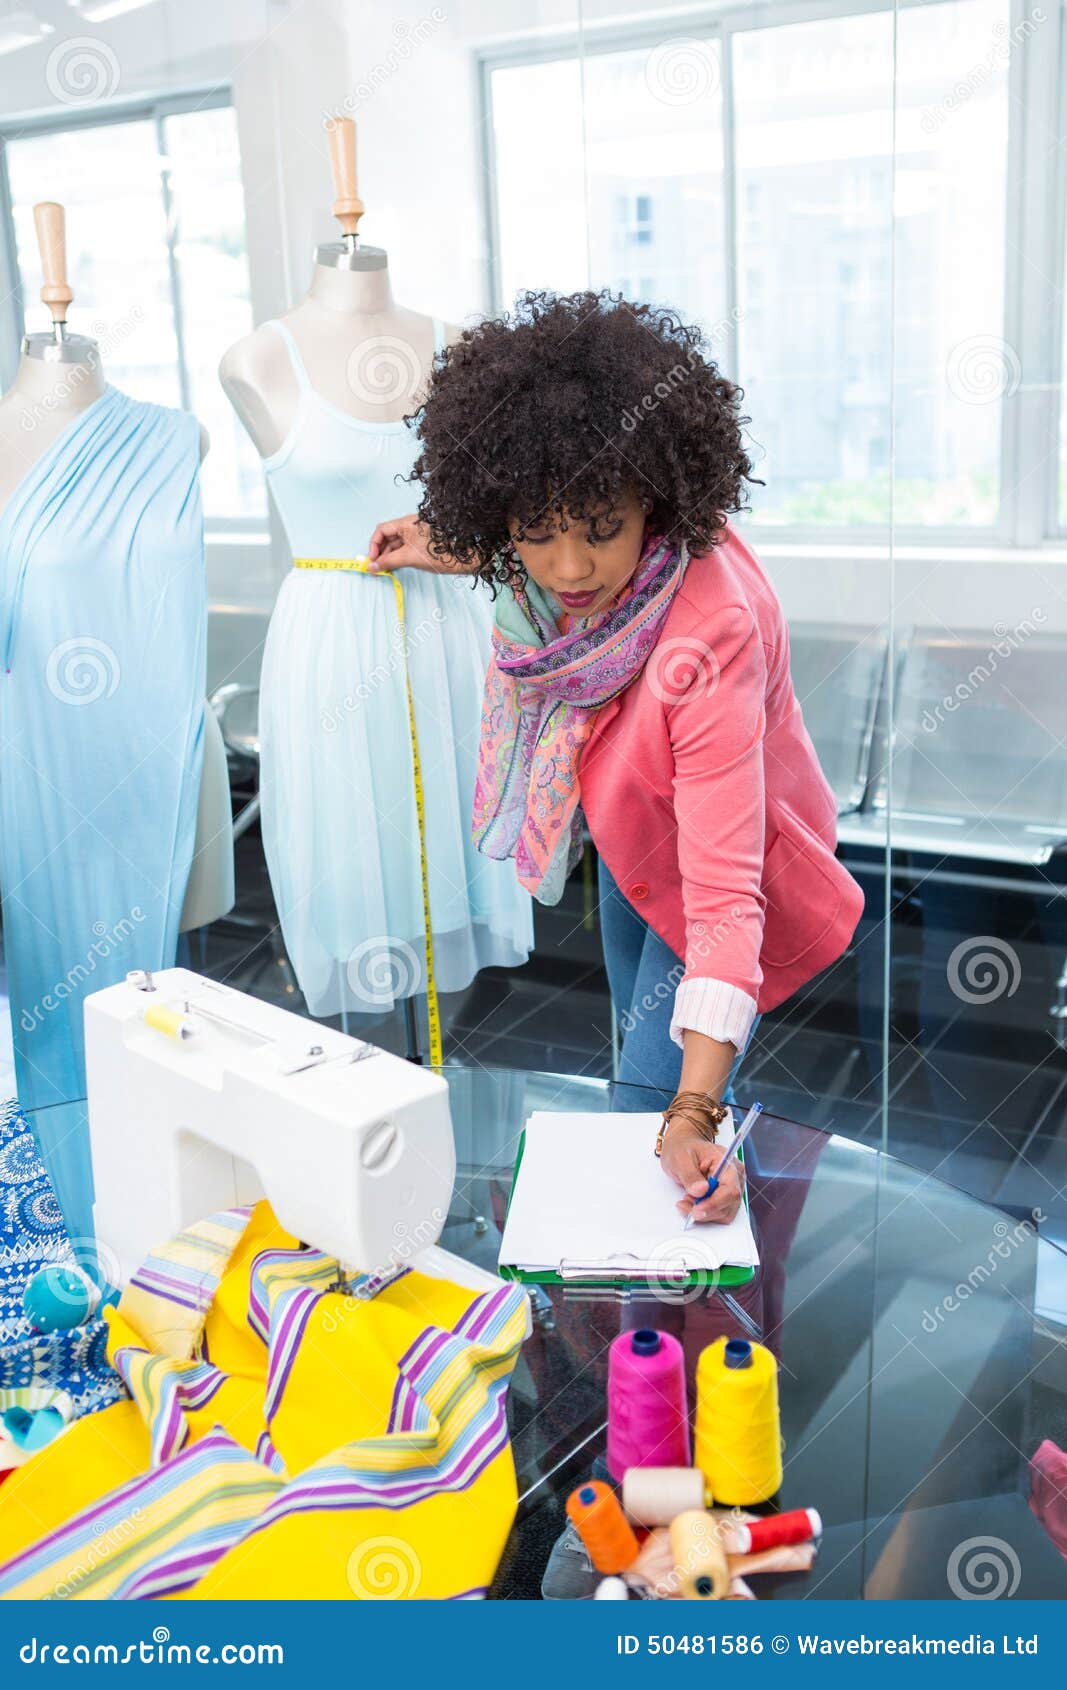 Female Fashion Designer at Work Stock Photo - Image of female, frizzy ...